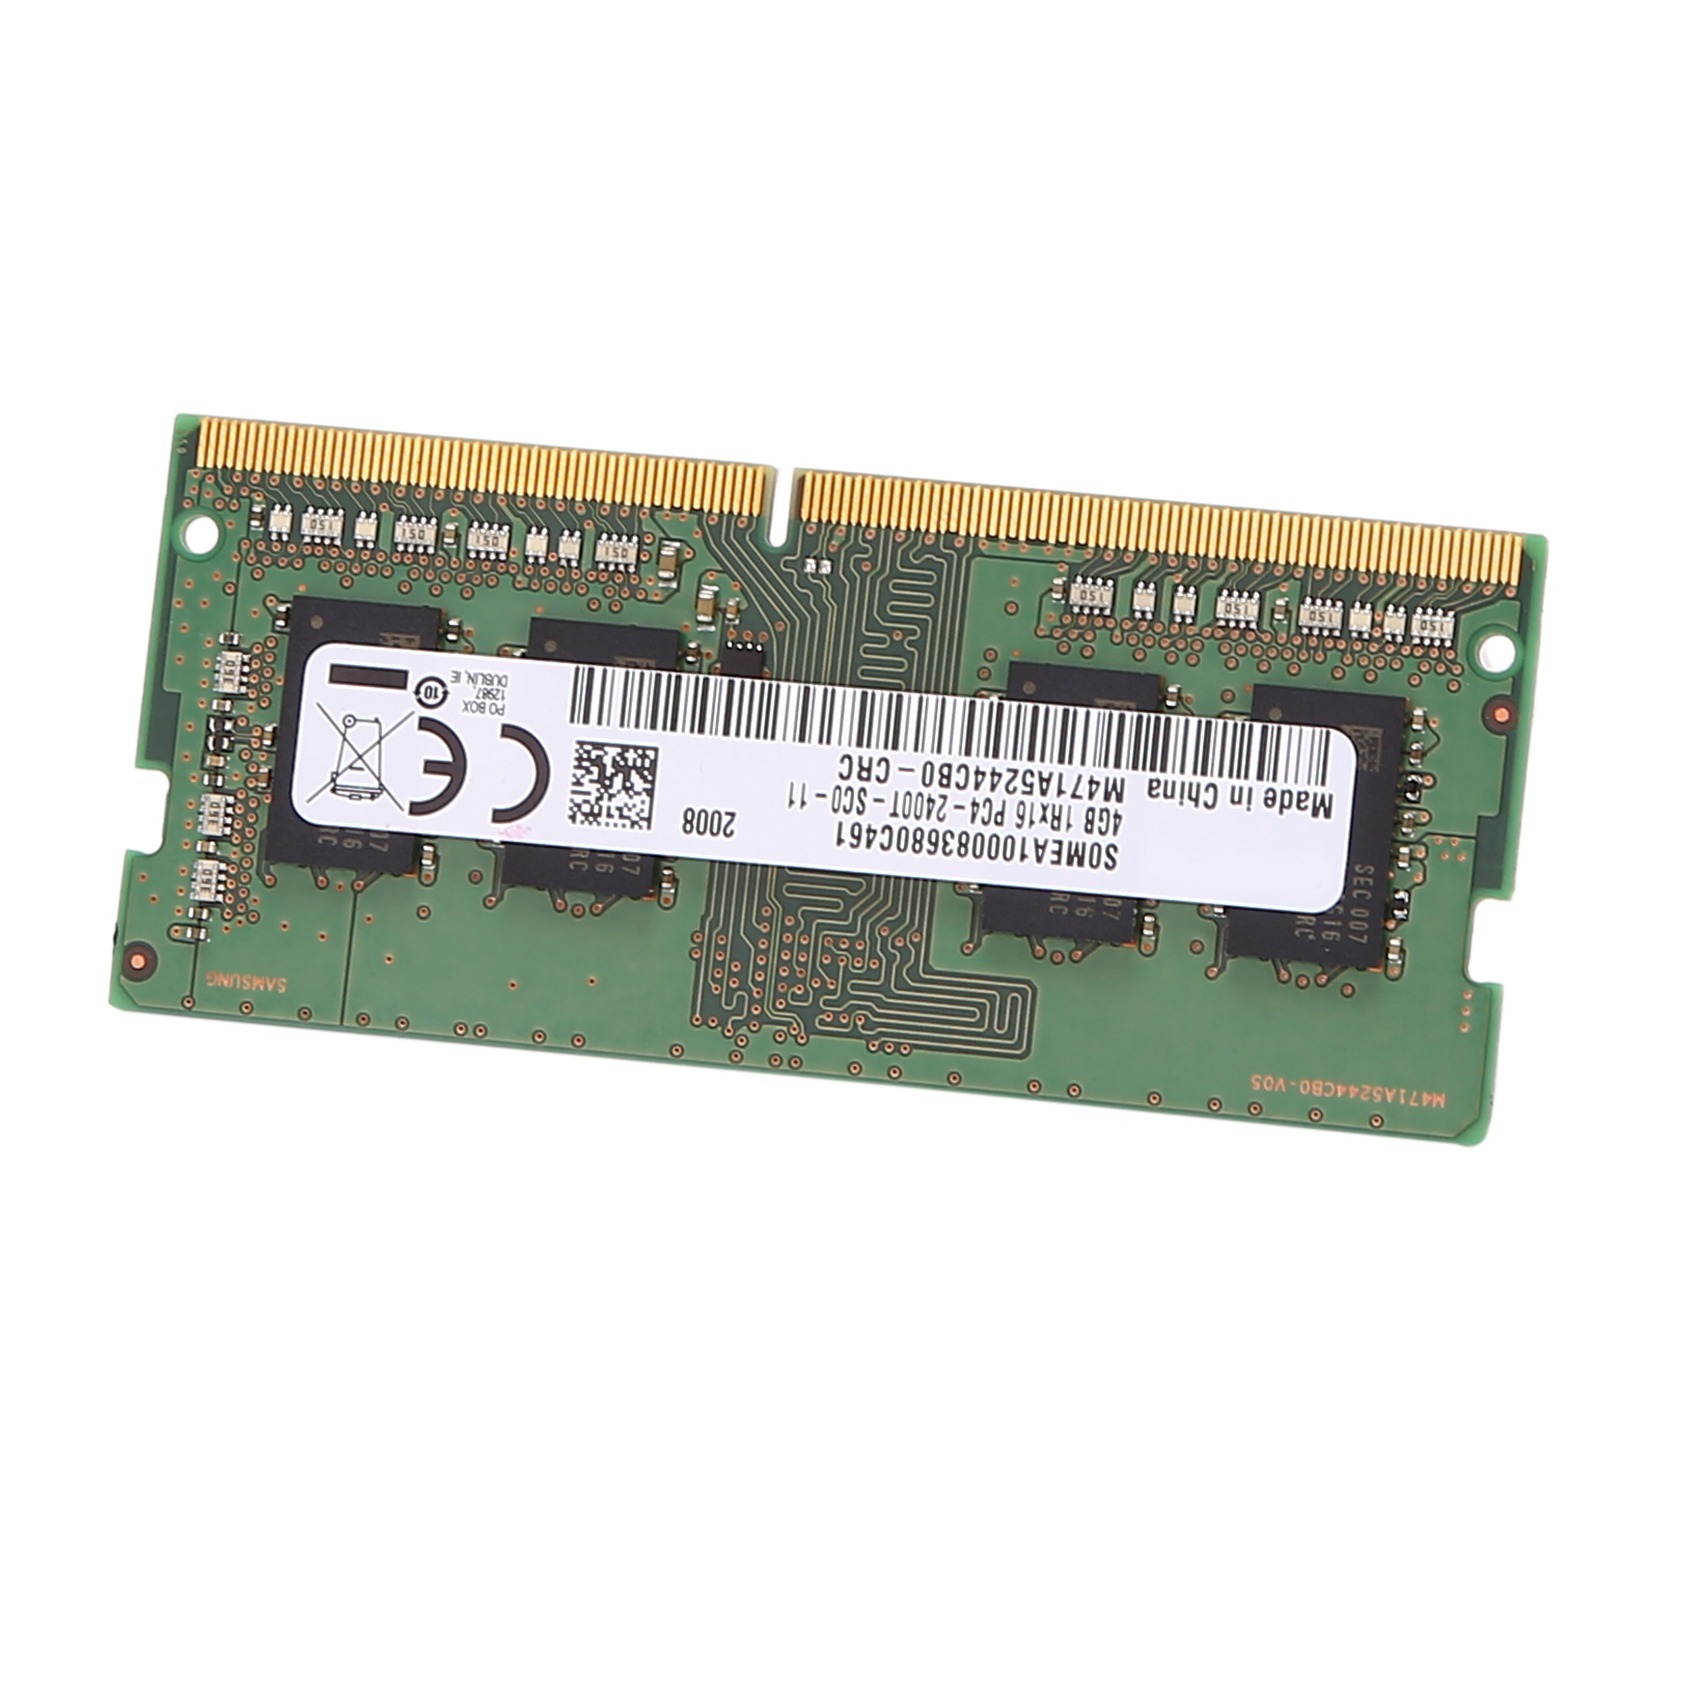 Память 2133 купить. ОЗУ для ноутбука DDR 4 SODIMM. Ddr4 2133 для ноутбука. Частоты SODIMM. Сколько стоит нормальная Оперативная память для ноутбука ASUS.